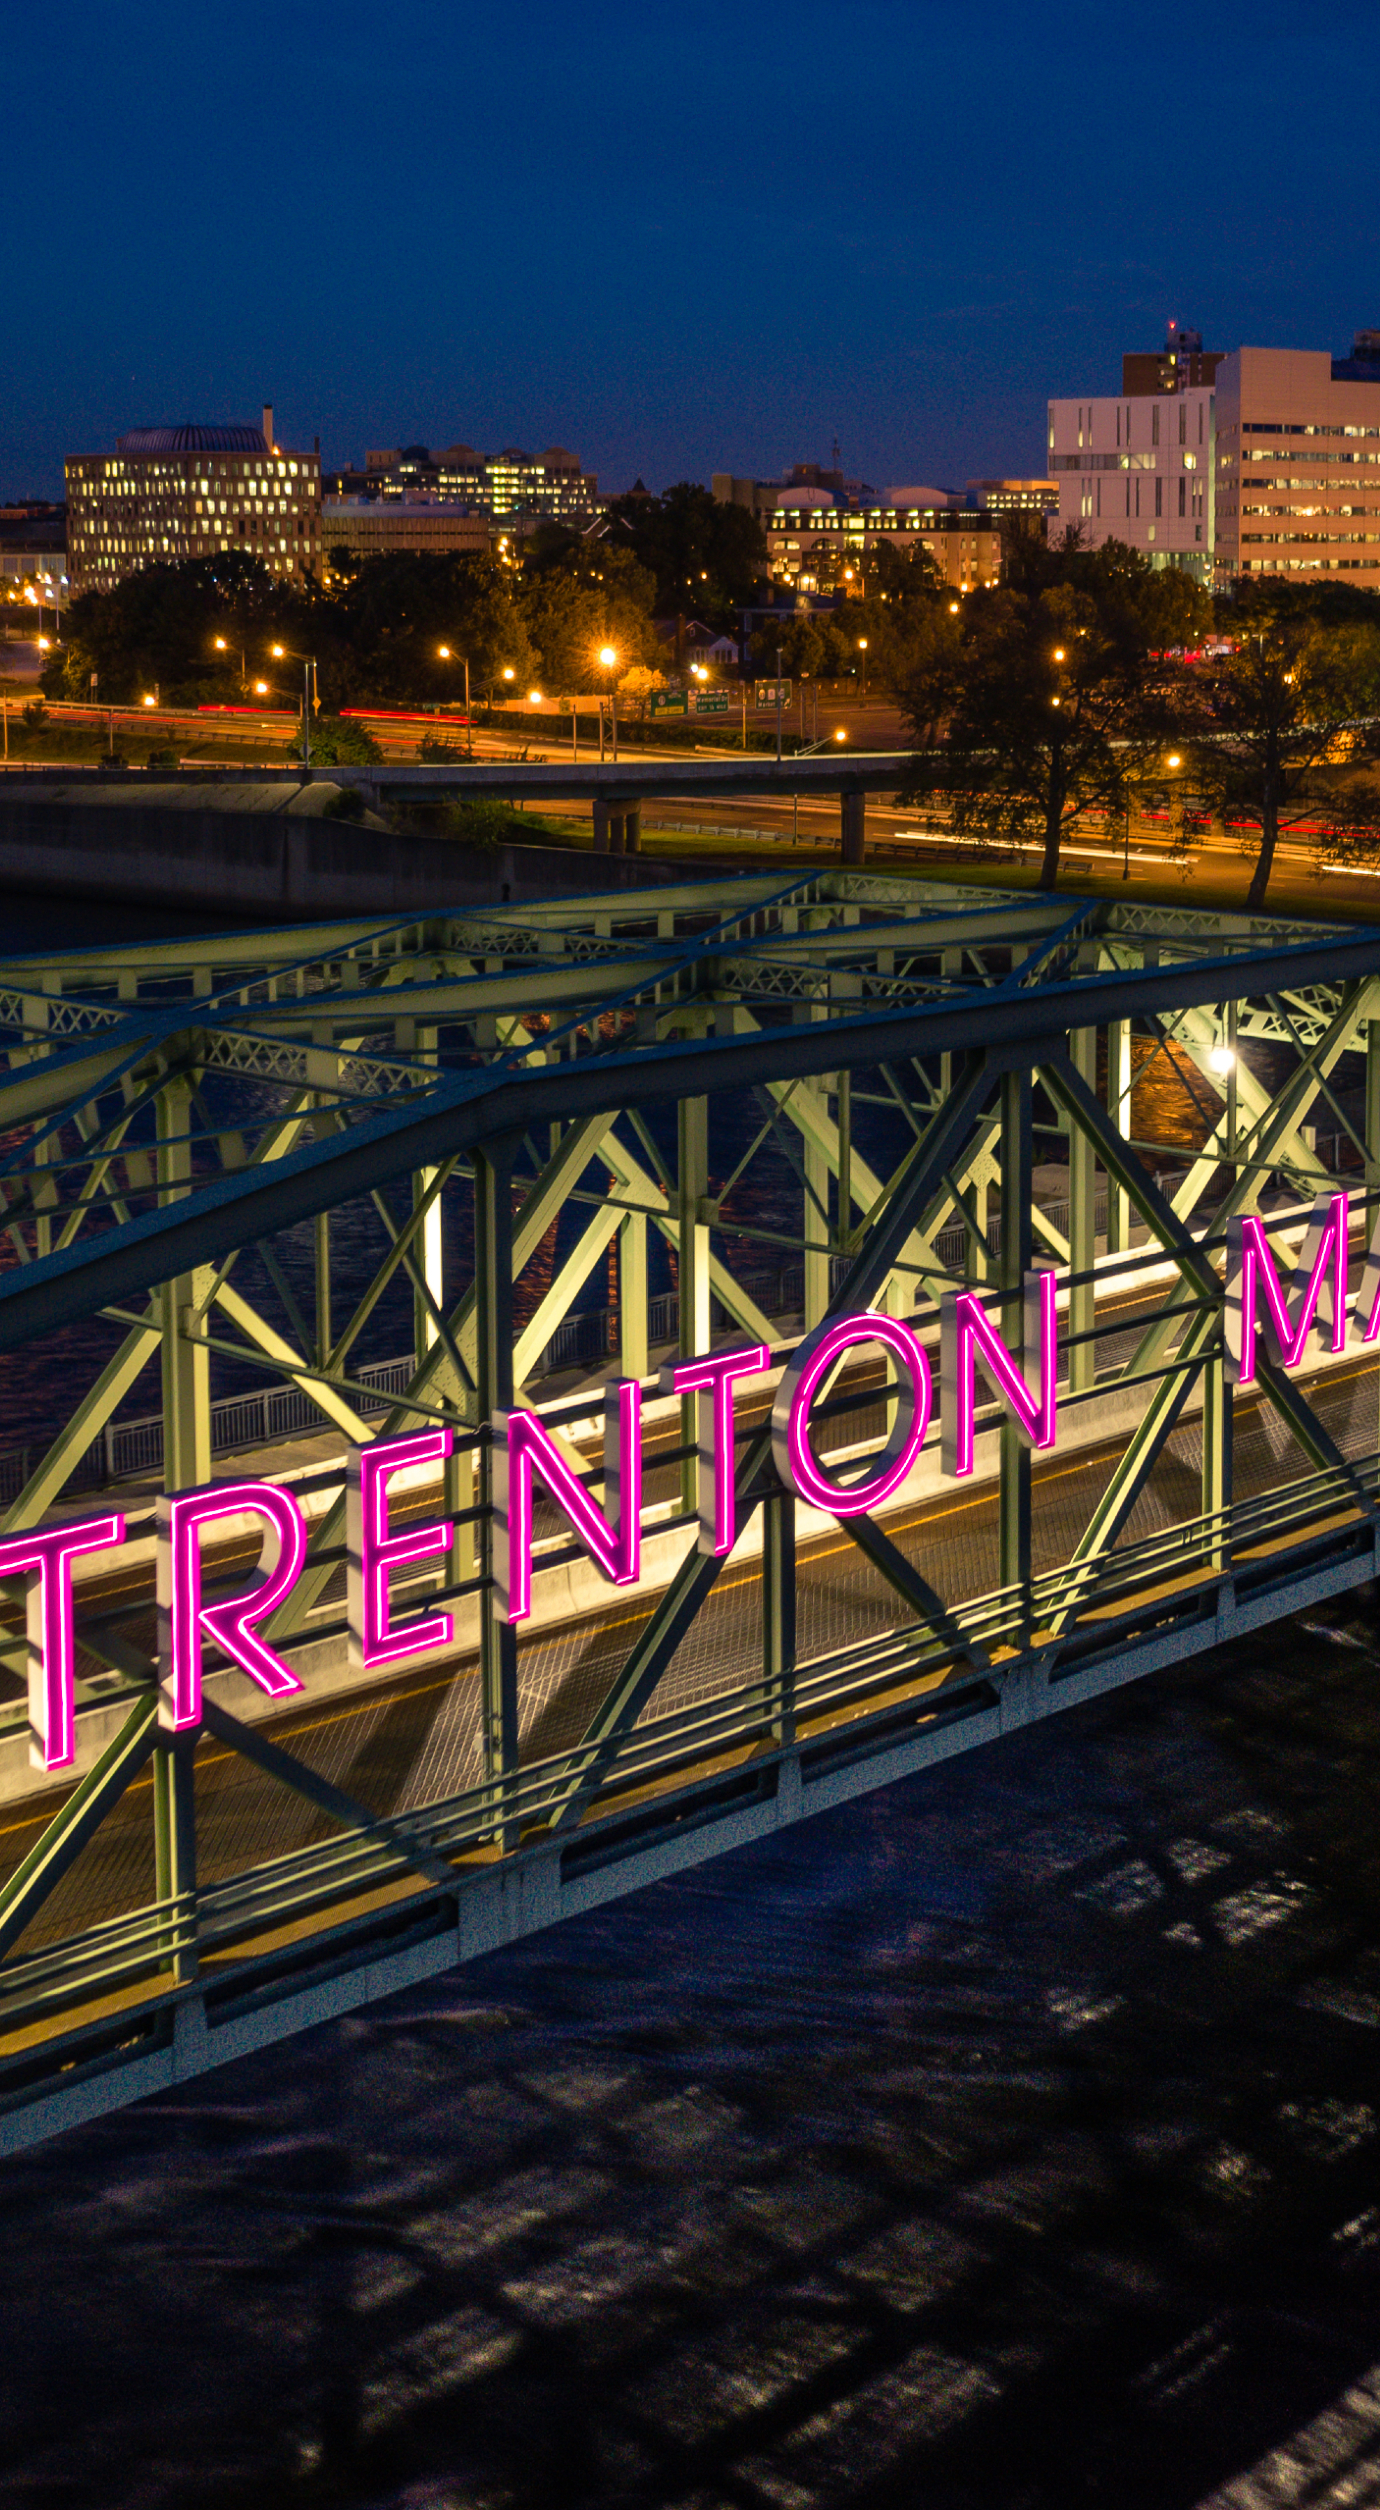 Trenton NJ bridge at night